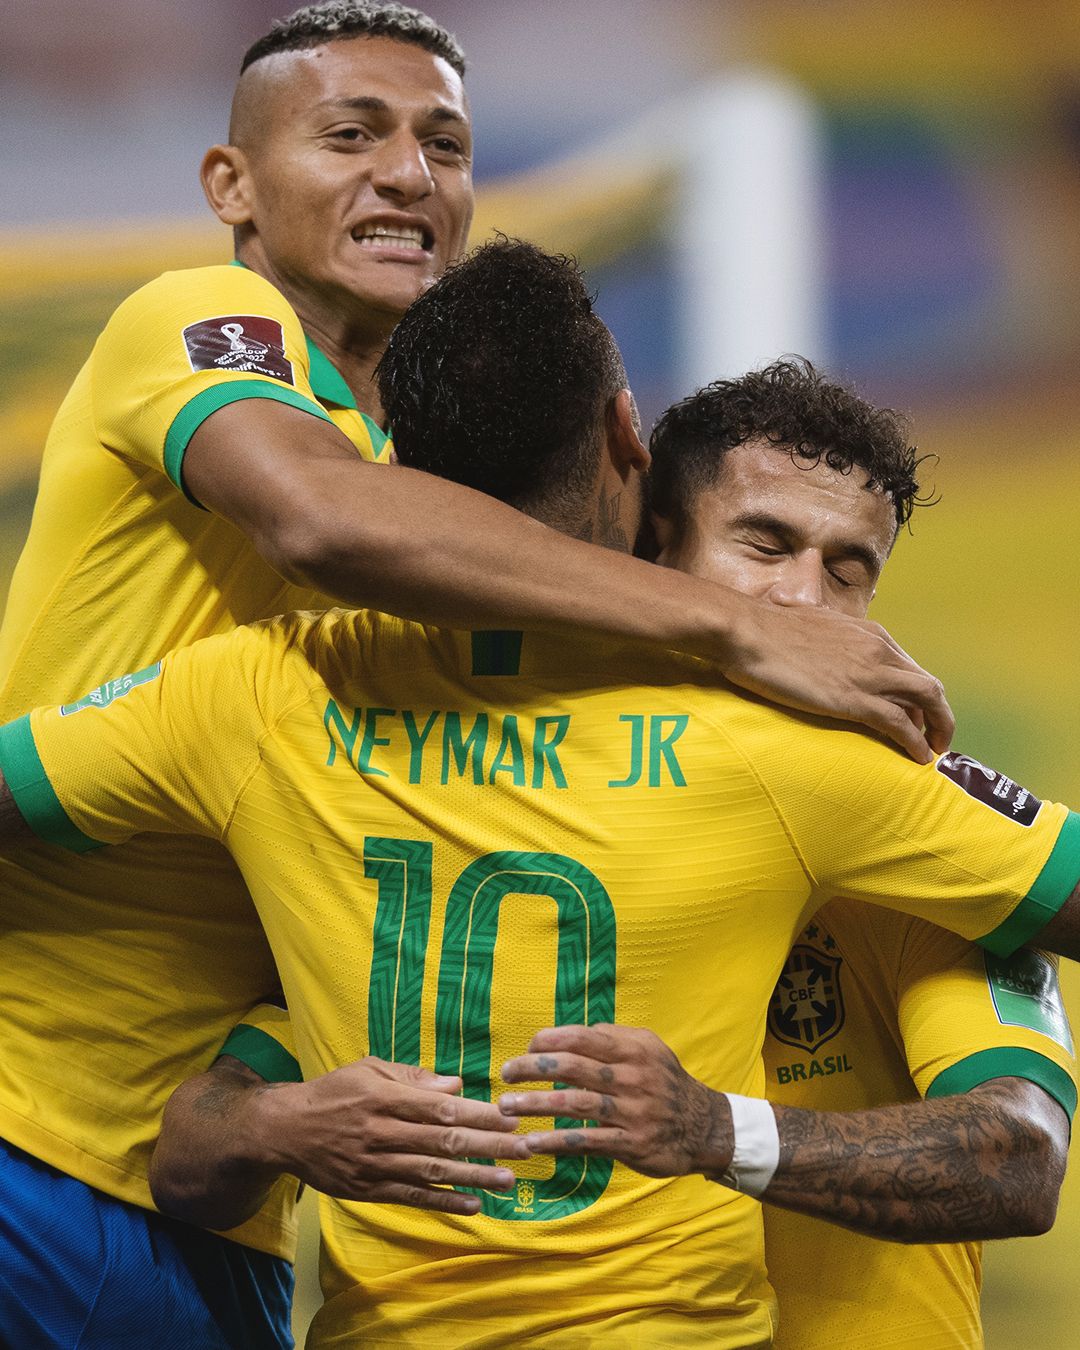 Бразилия команда